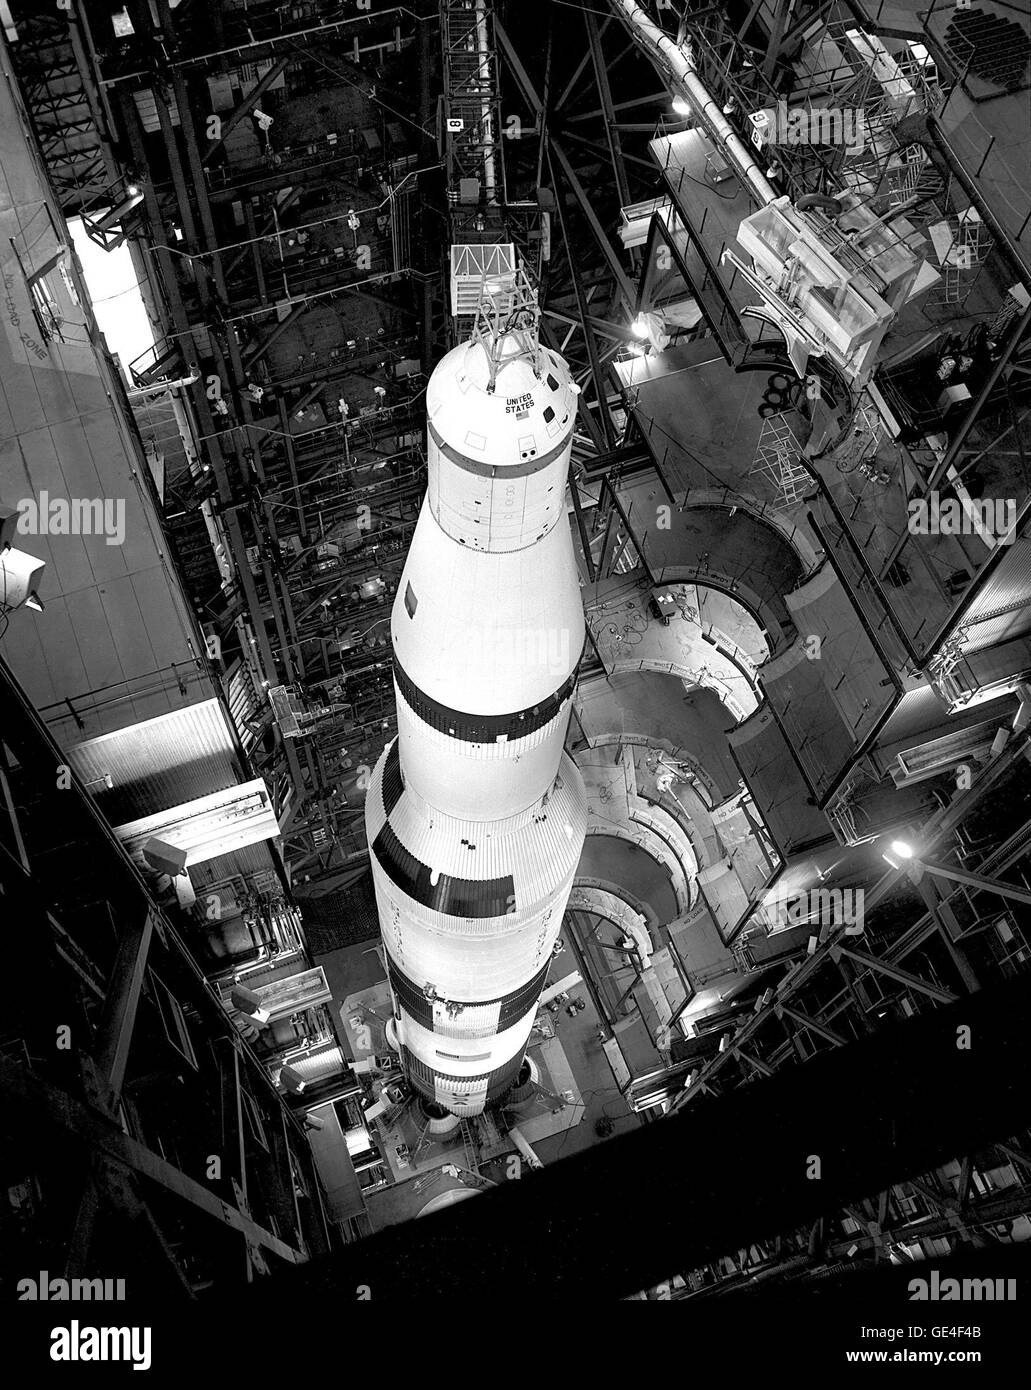 Un alto-basso vista della 36-story-tall Apollo/Saturno 501 veicolo spaziale in alta Bay n. 1 il gruppo di veicoli Edificio. Immagine # : 67P-0208 Foto Stock